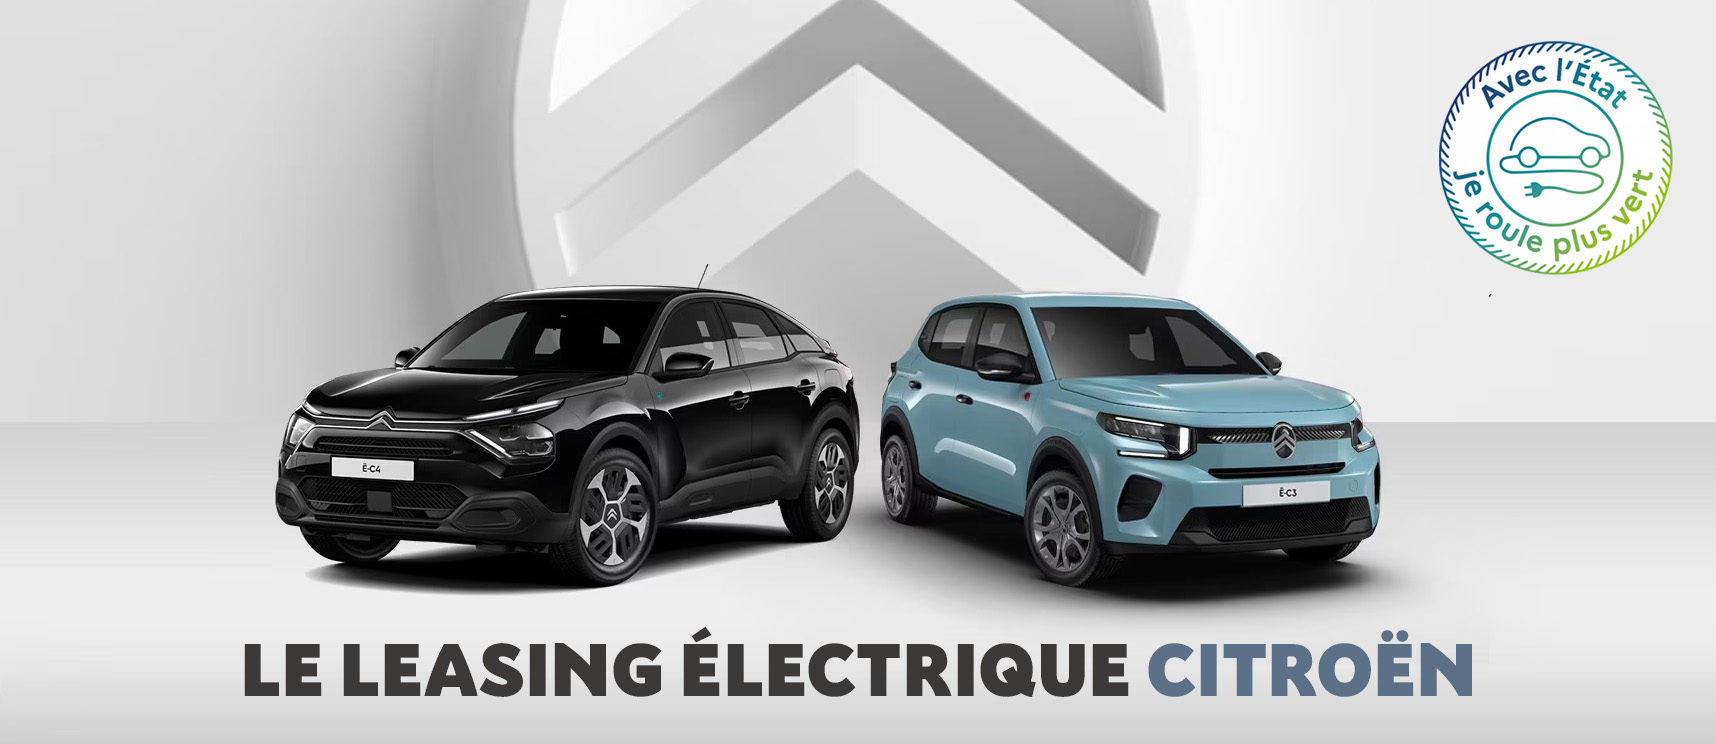 Mon leasing électrique, les offres Citroën !